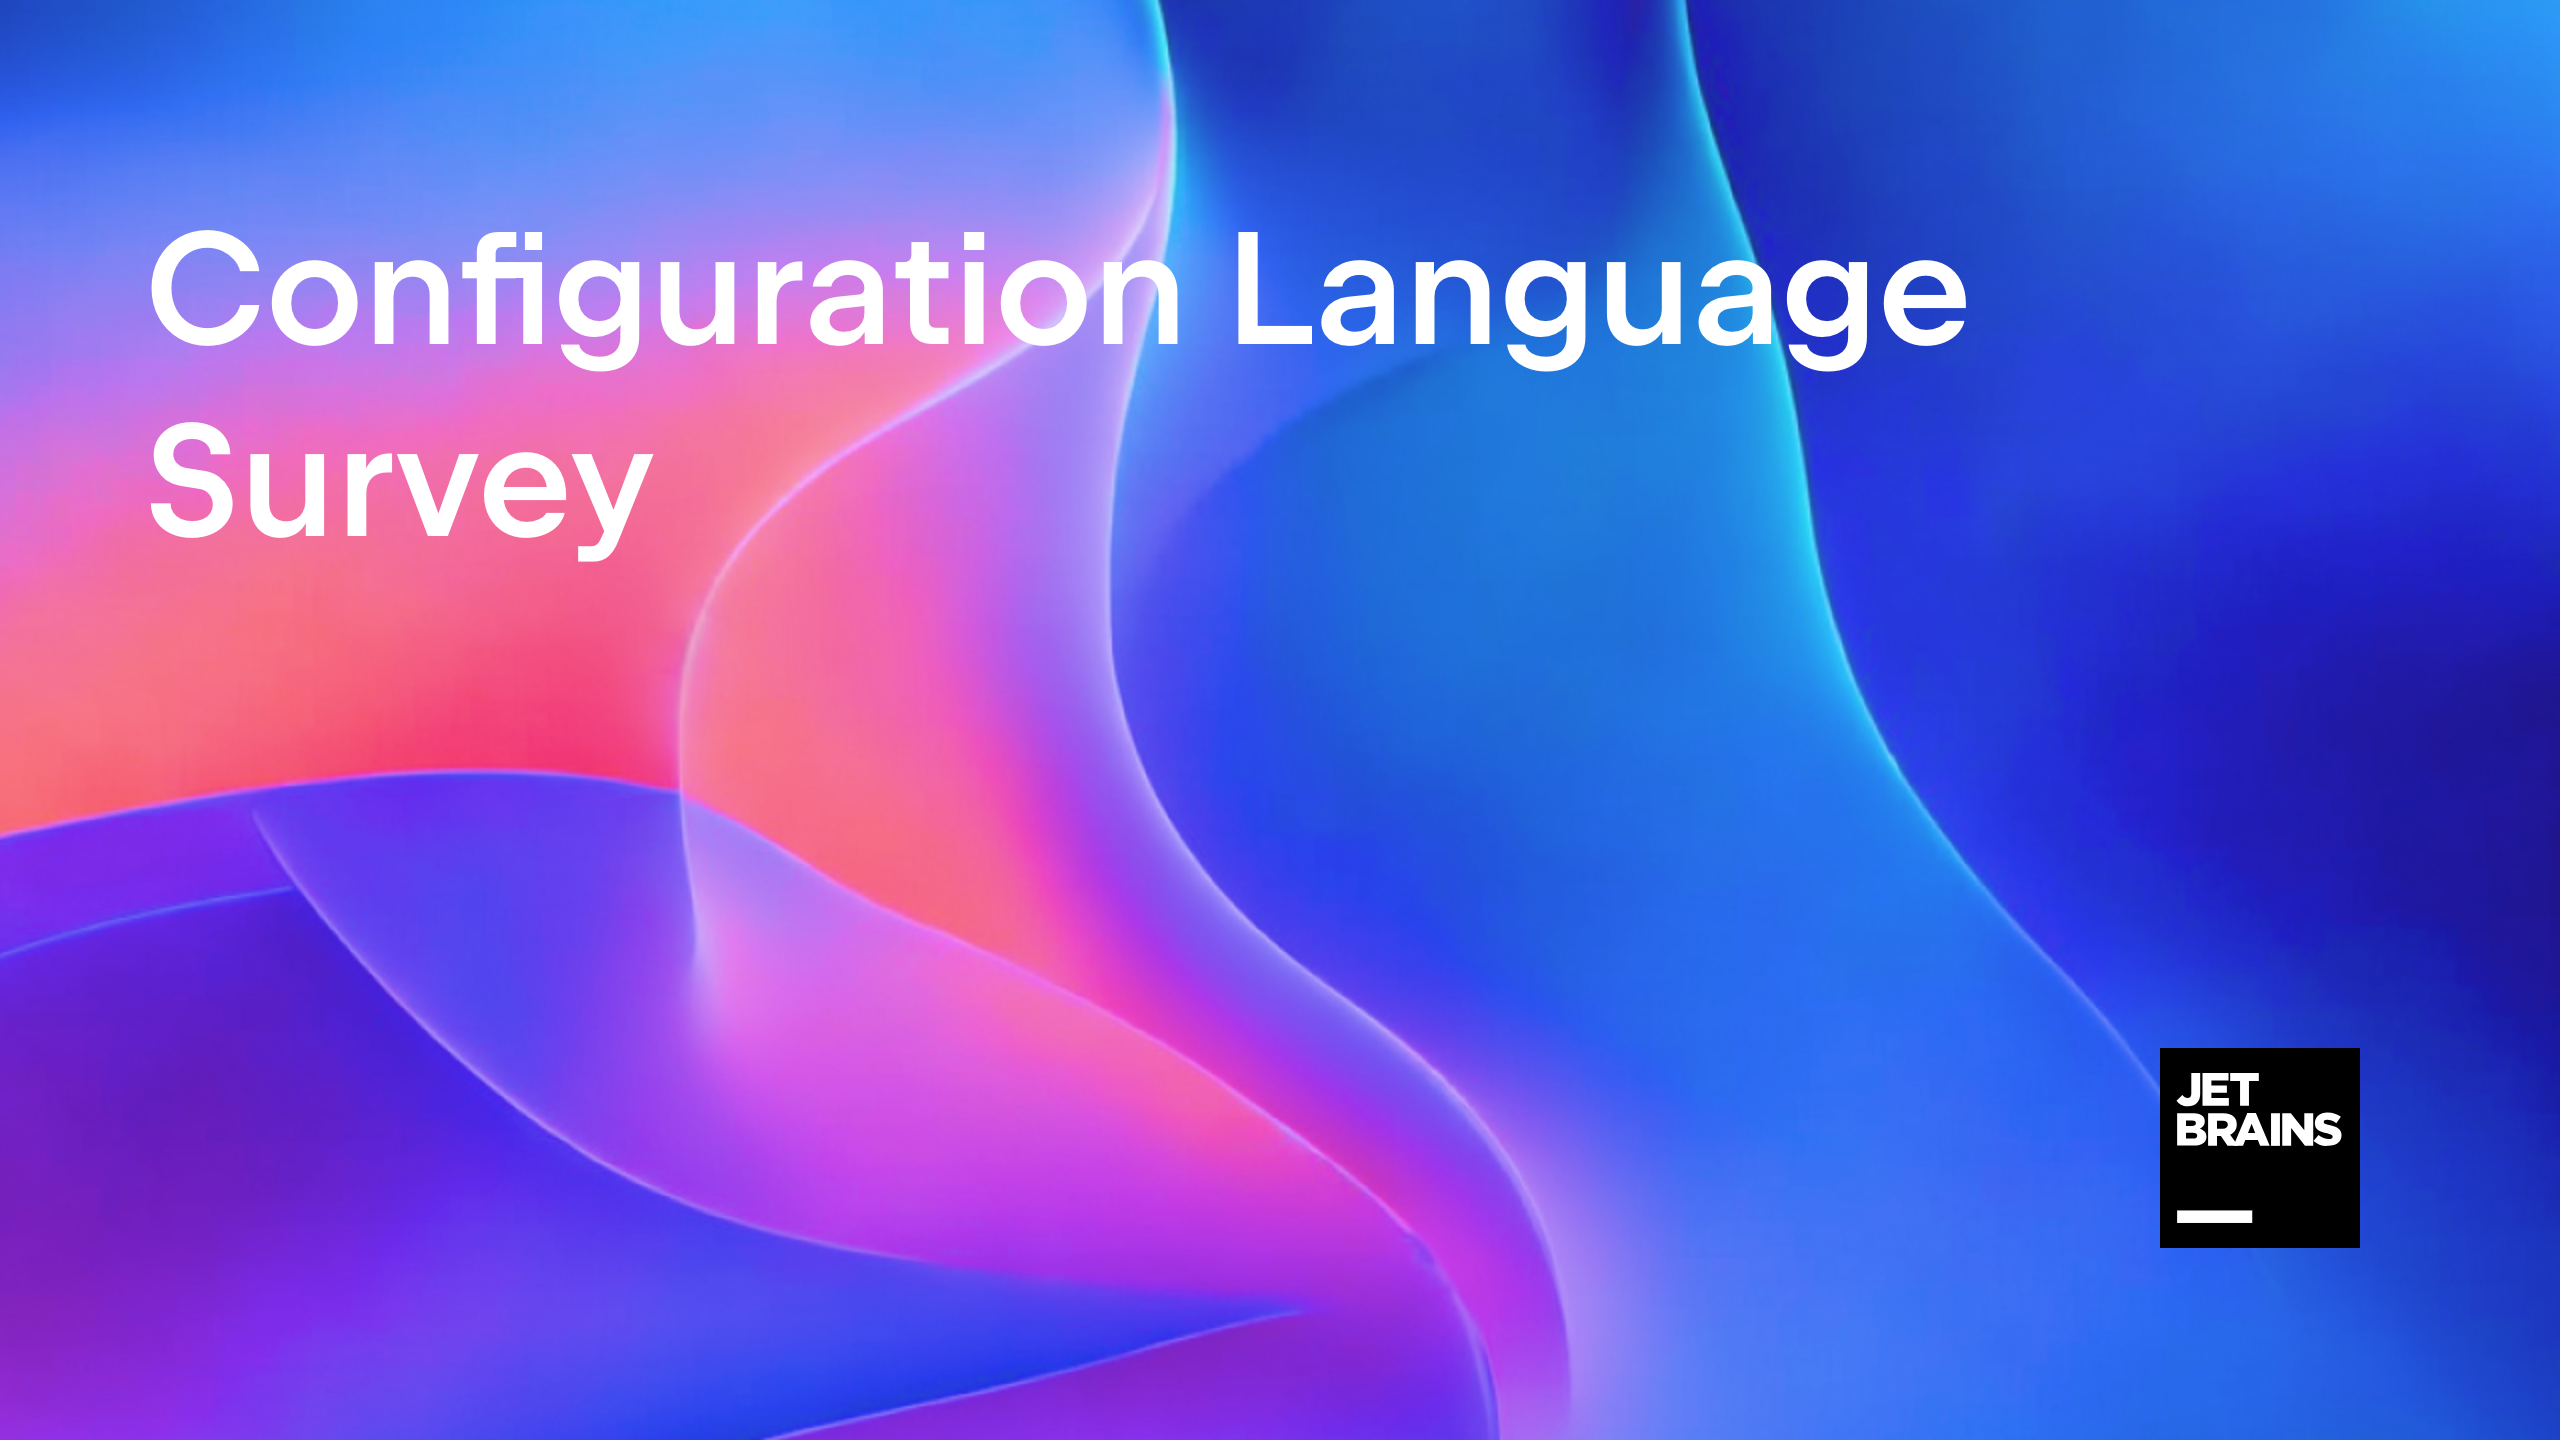 Configuration Language Survey by JetBrains